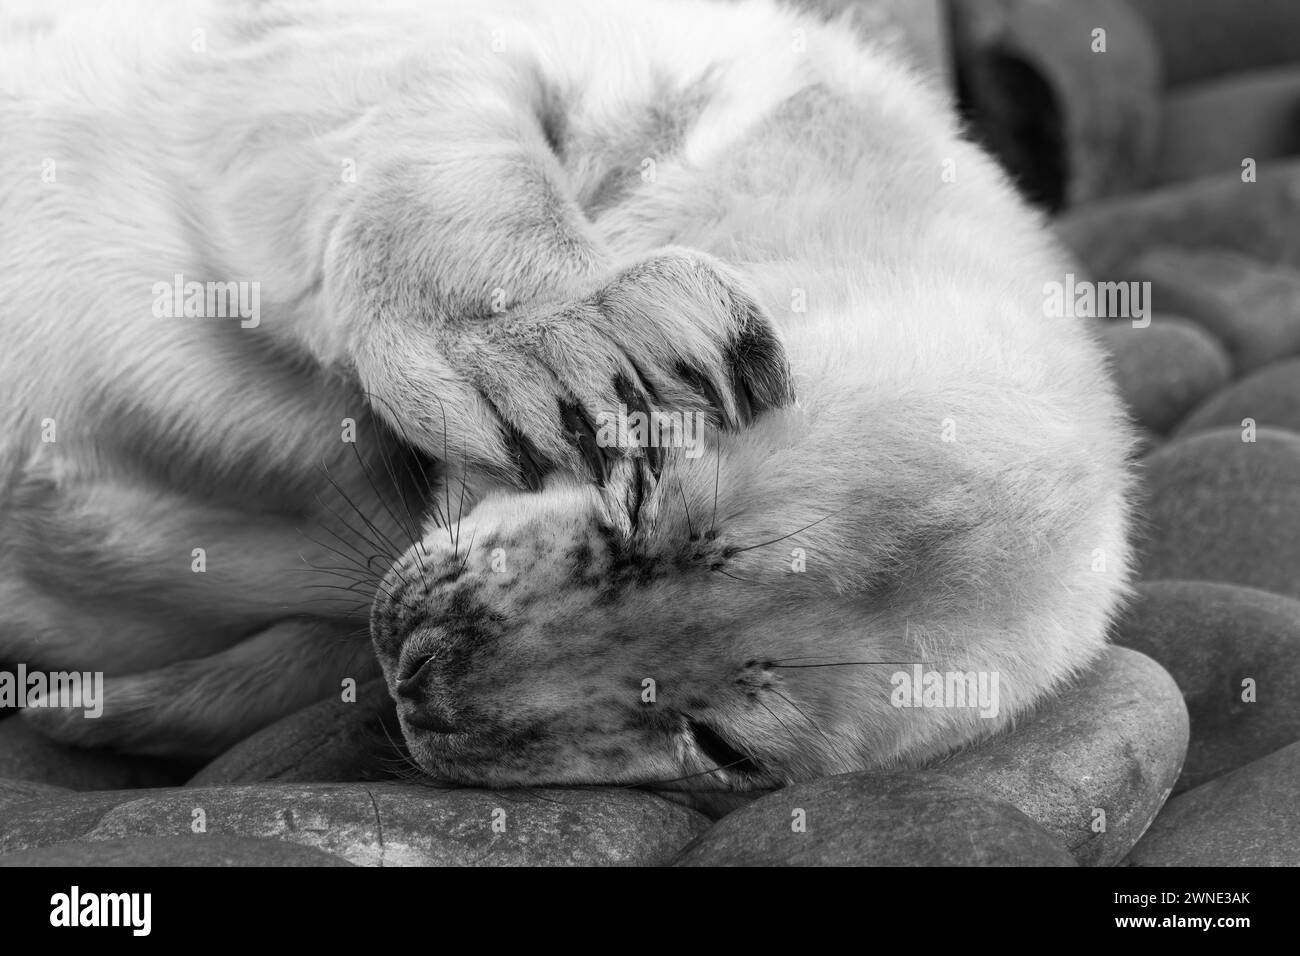 Les chiots phoques gris nouveau-nés attendent le retour de leur mère pour les nourrir. Trouvé sur une plage dans Berwickshire, Écosse, Royaume-Uni Banque D'Images